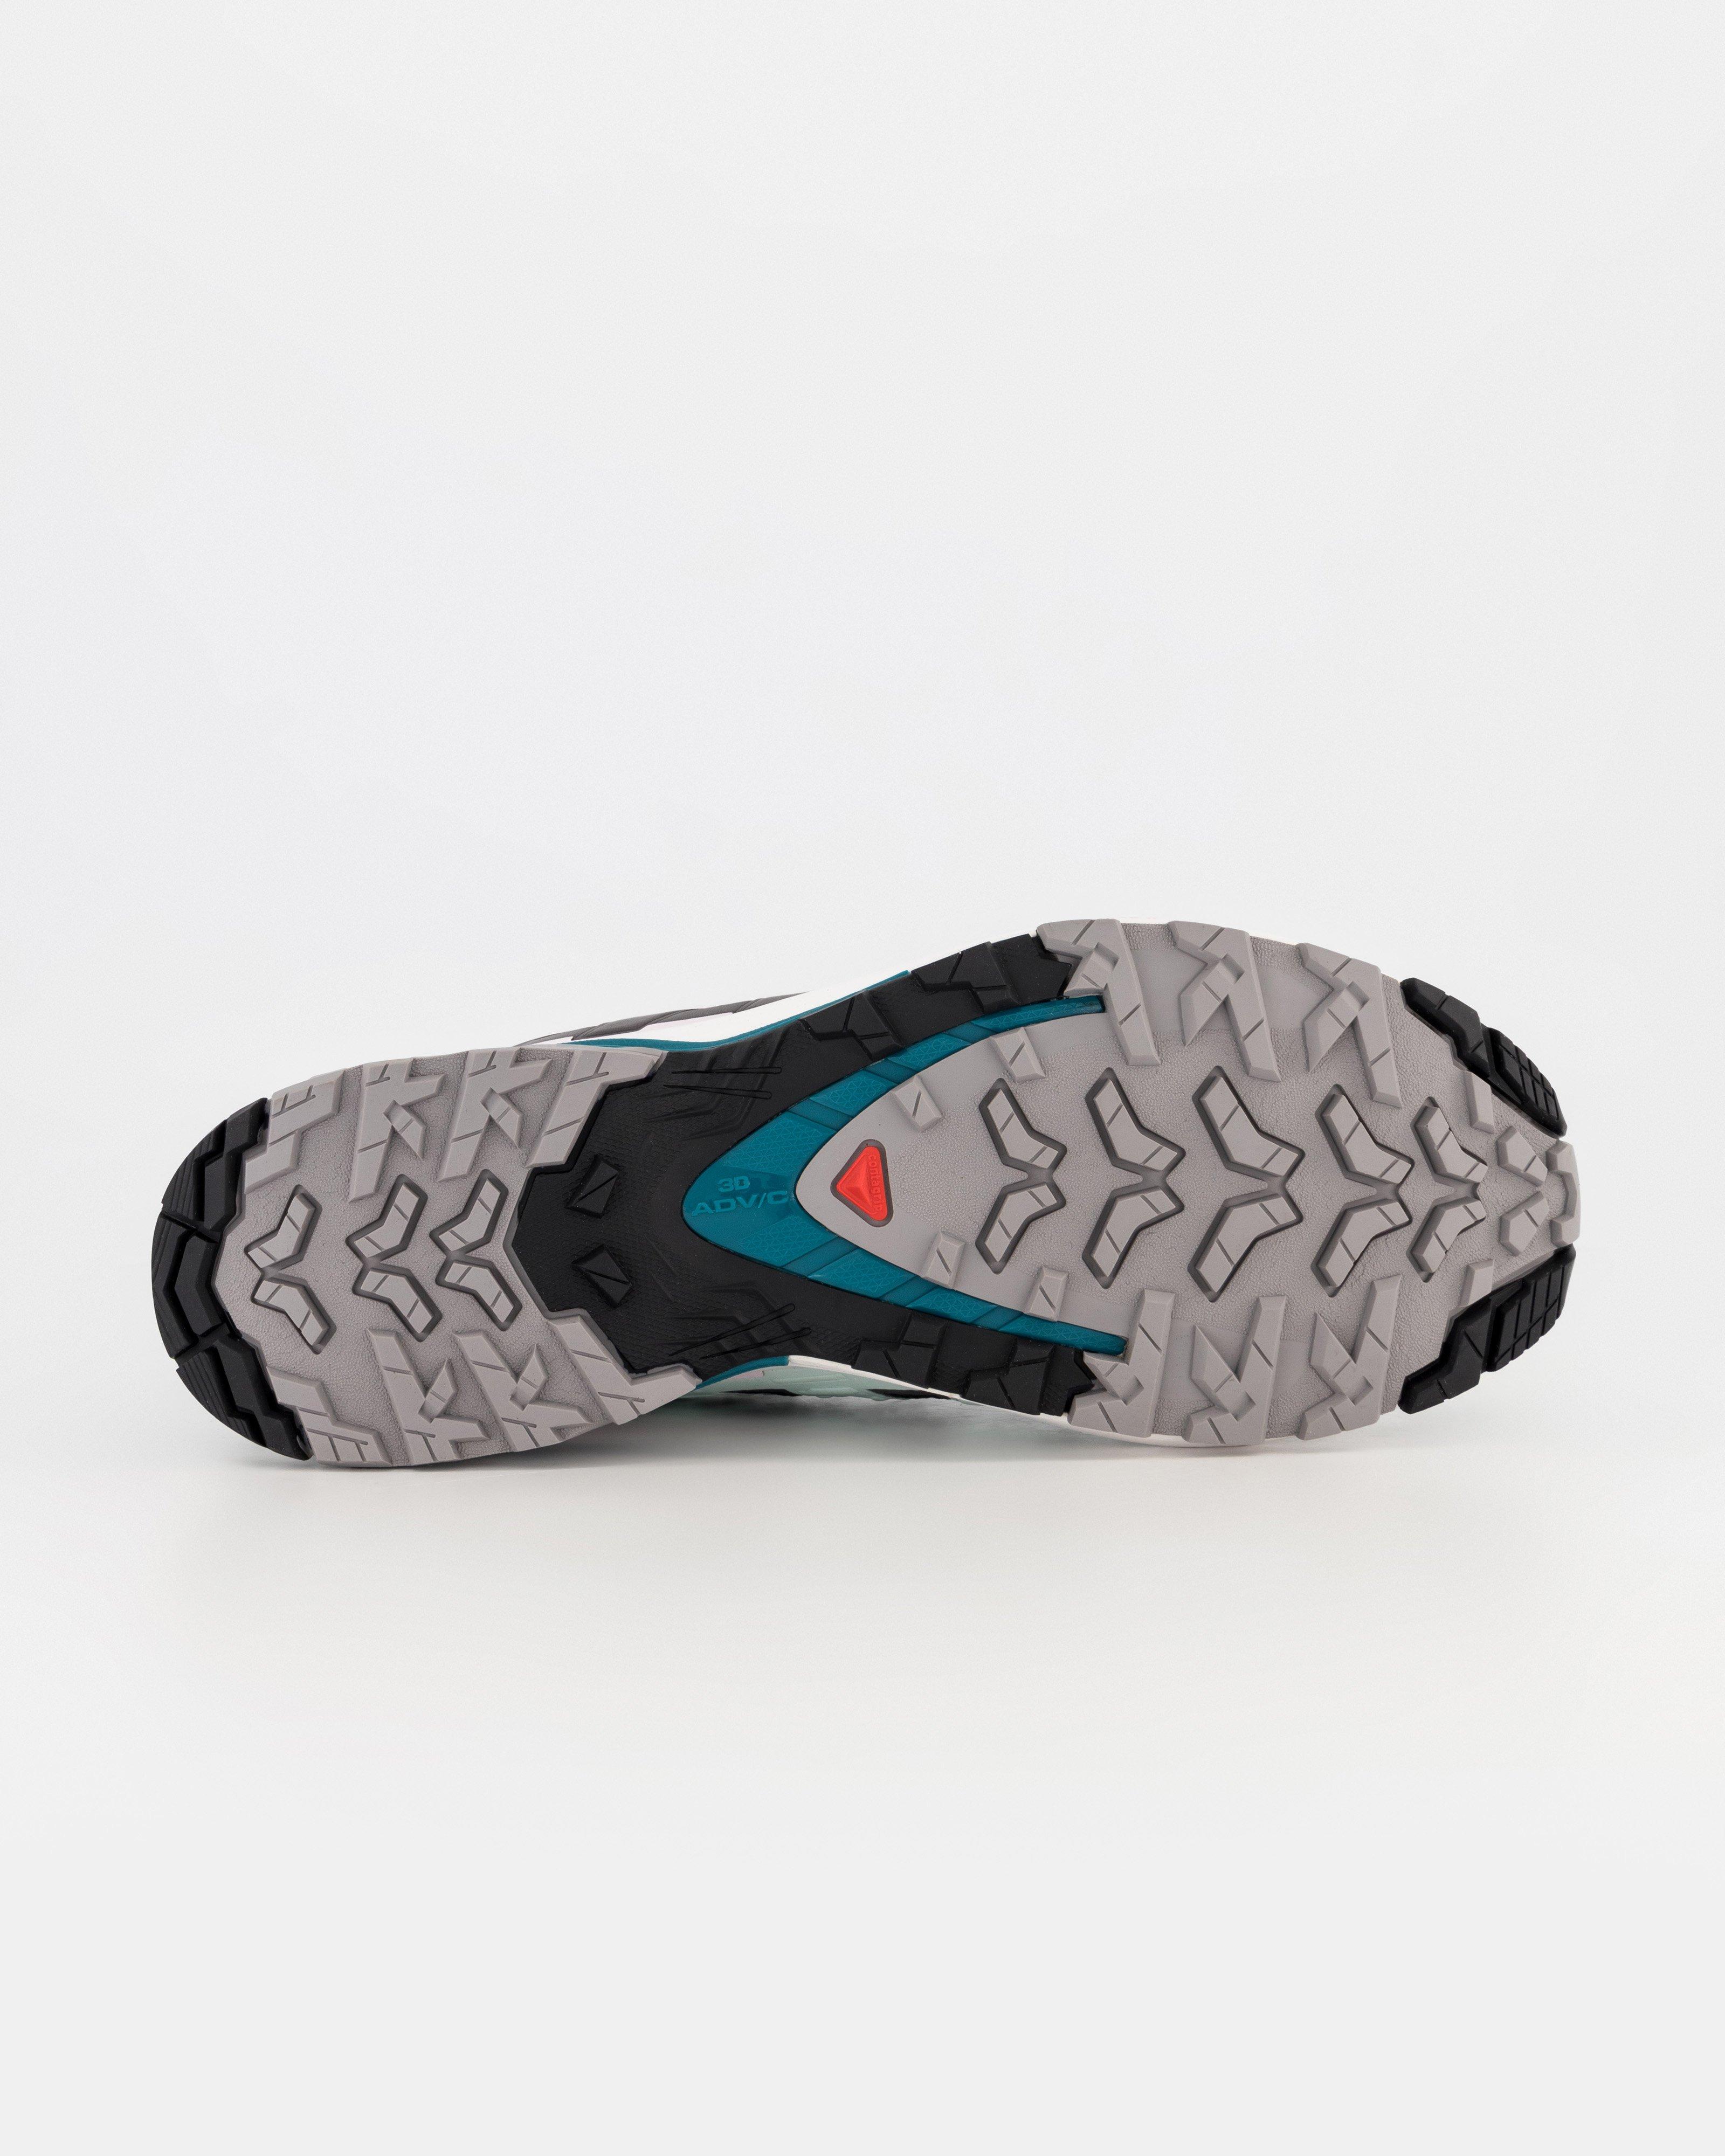 Salomon Women’s XA Pro 3D V9 Gore-Tex Hiking Shoes  -  Black